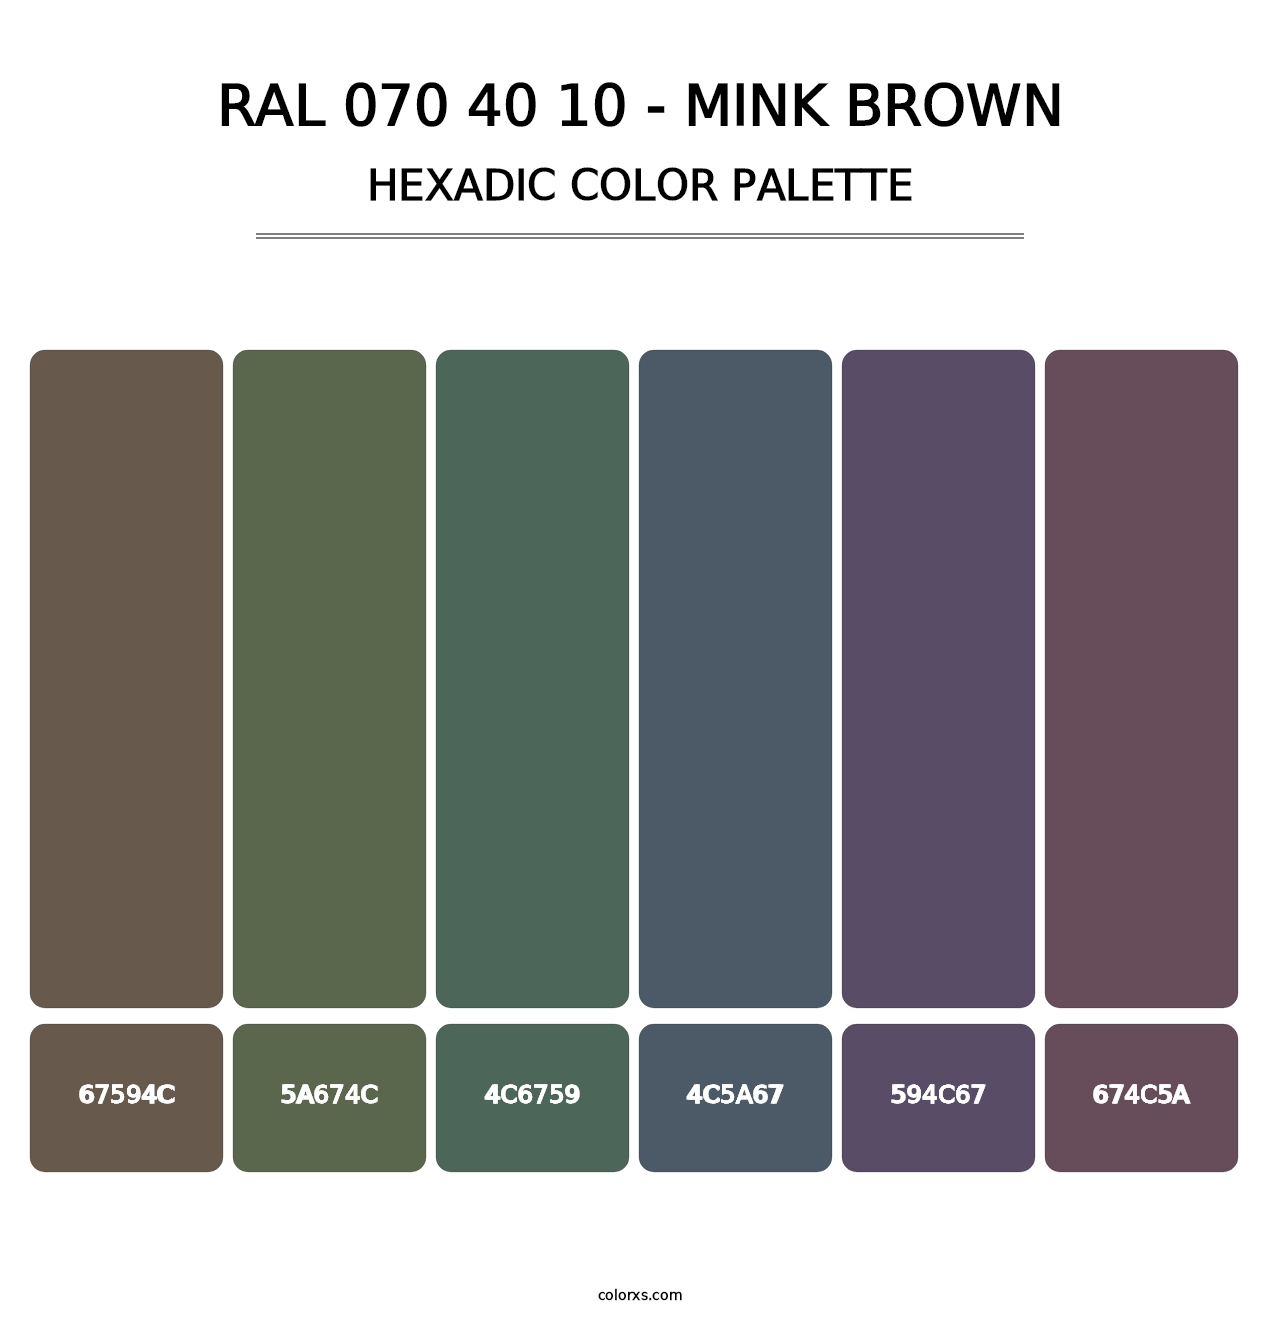 RAL 070 40 10 - Mink Brown - Hexadic Color Palette